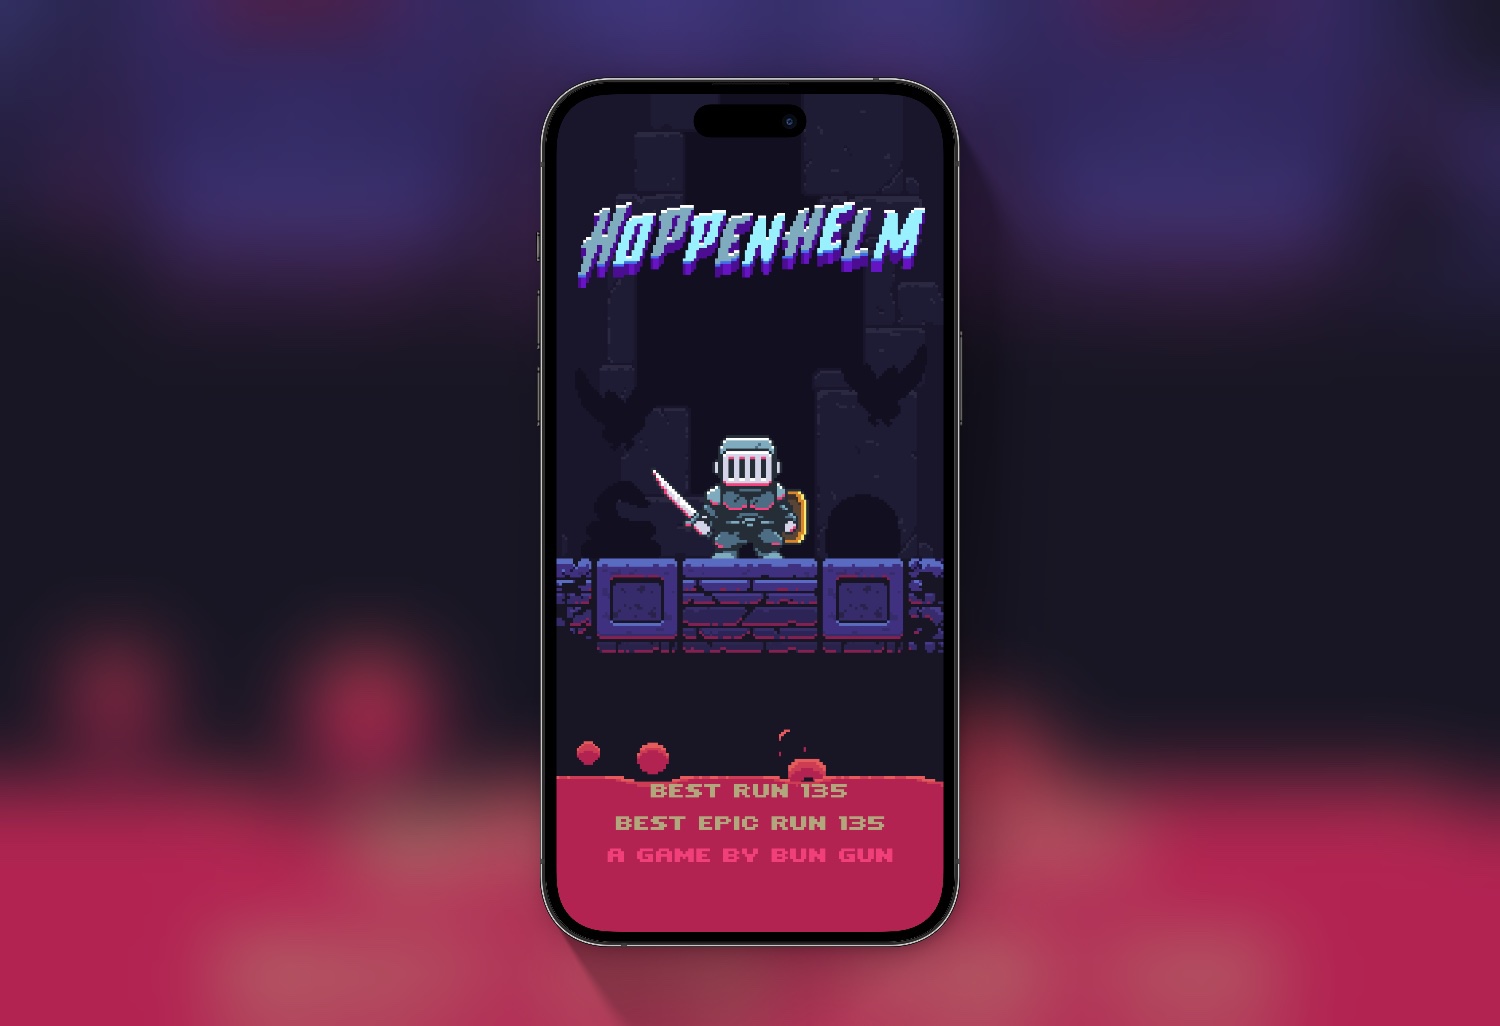 Best iPhone games Hoppenhelm retro game